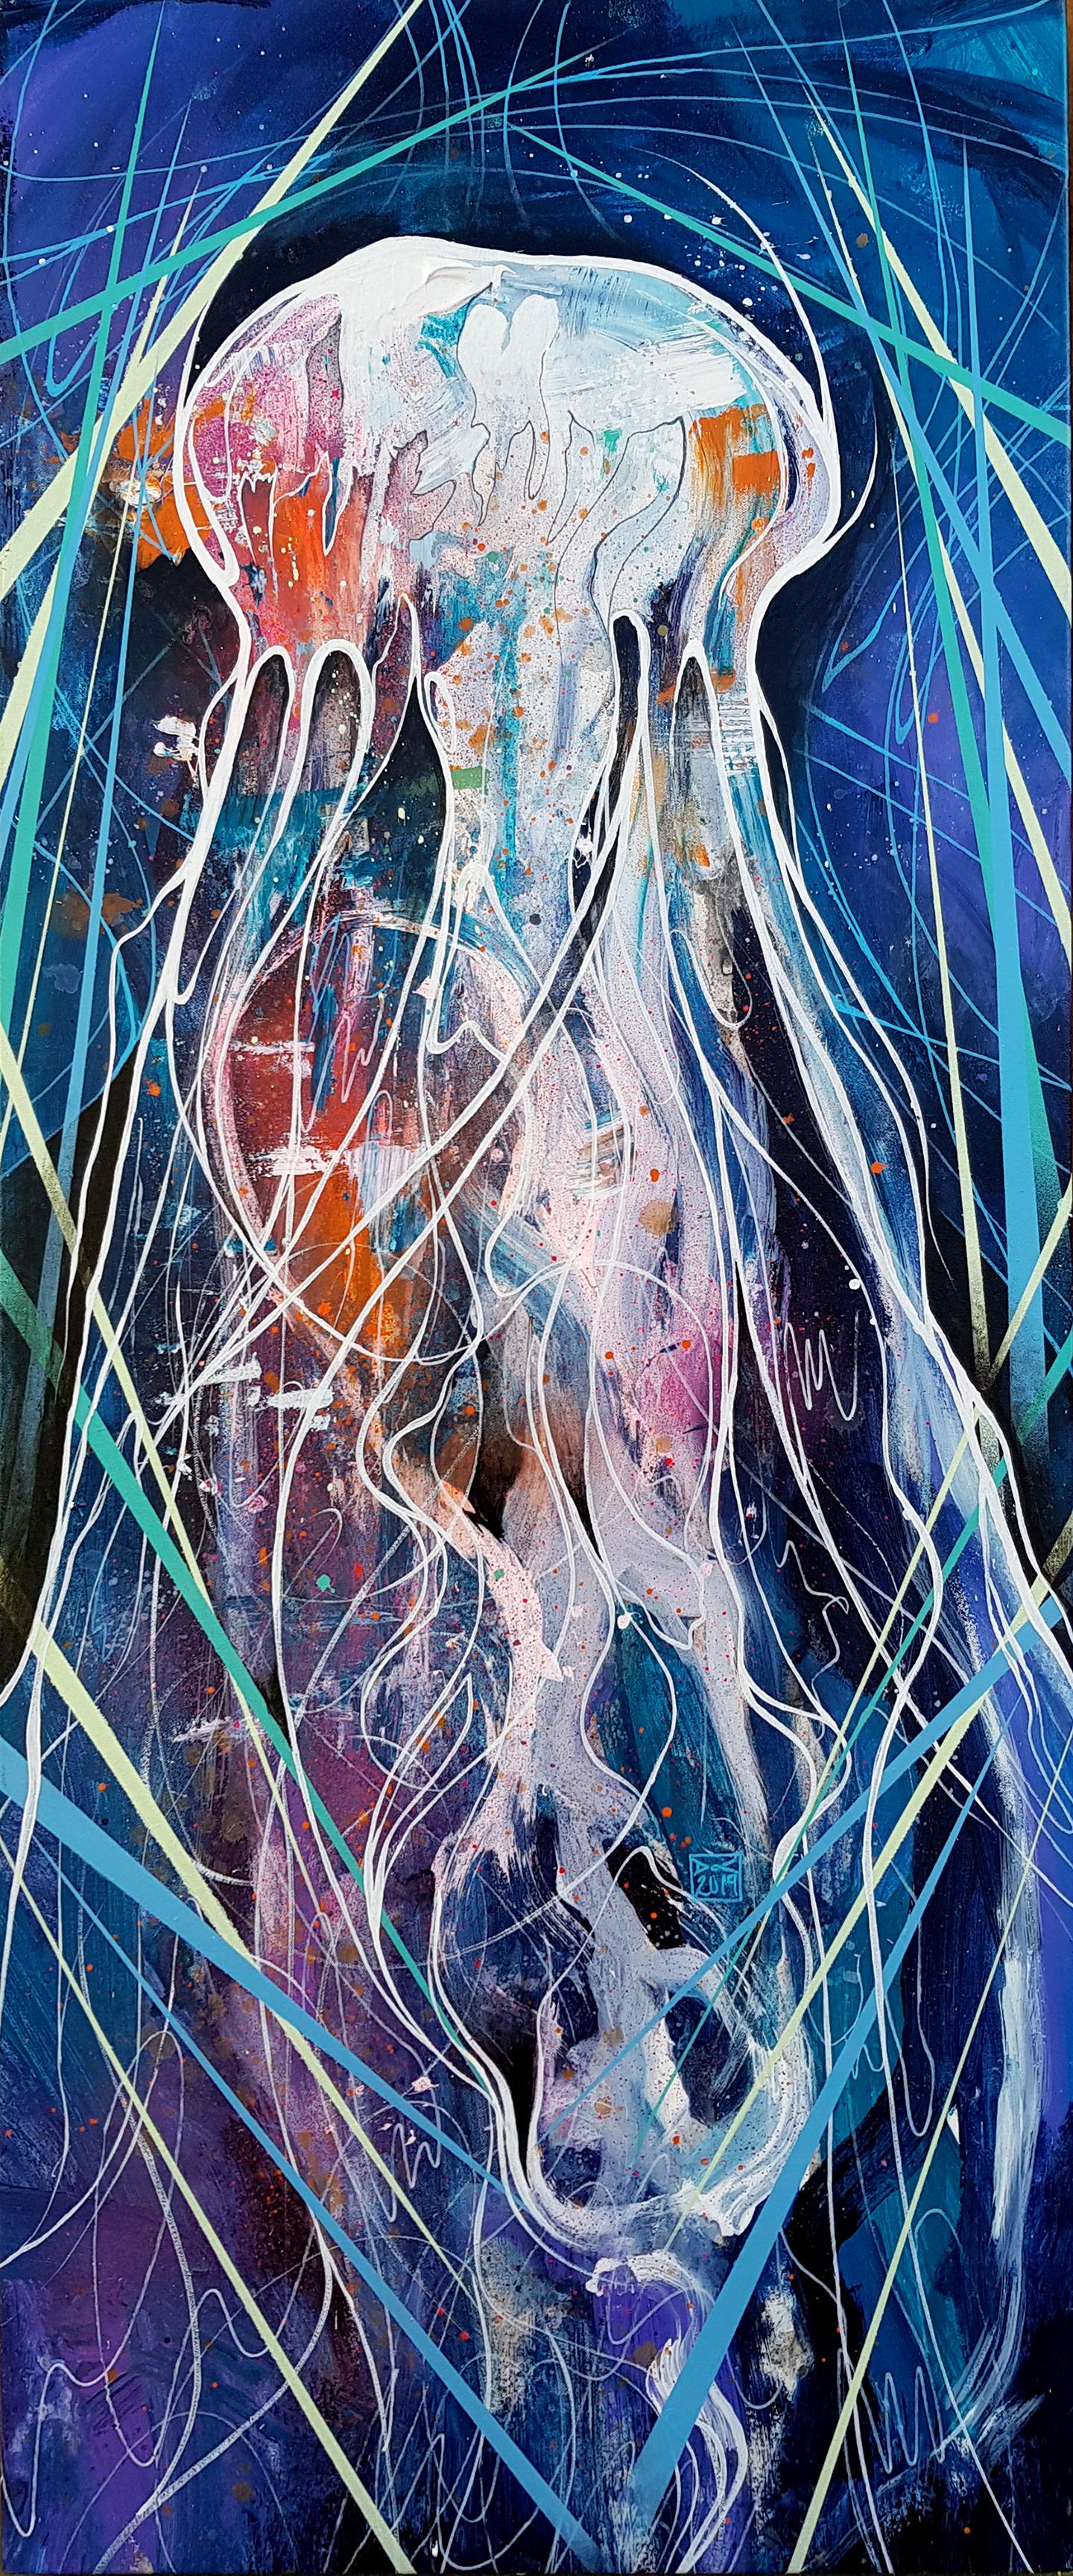 Jellyfish - 21. Jahrhundert, Zeitgenössisches Gemälde, Meerestier, Graffiti